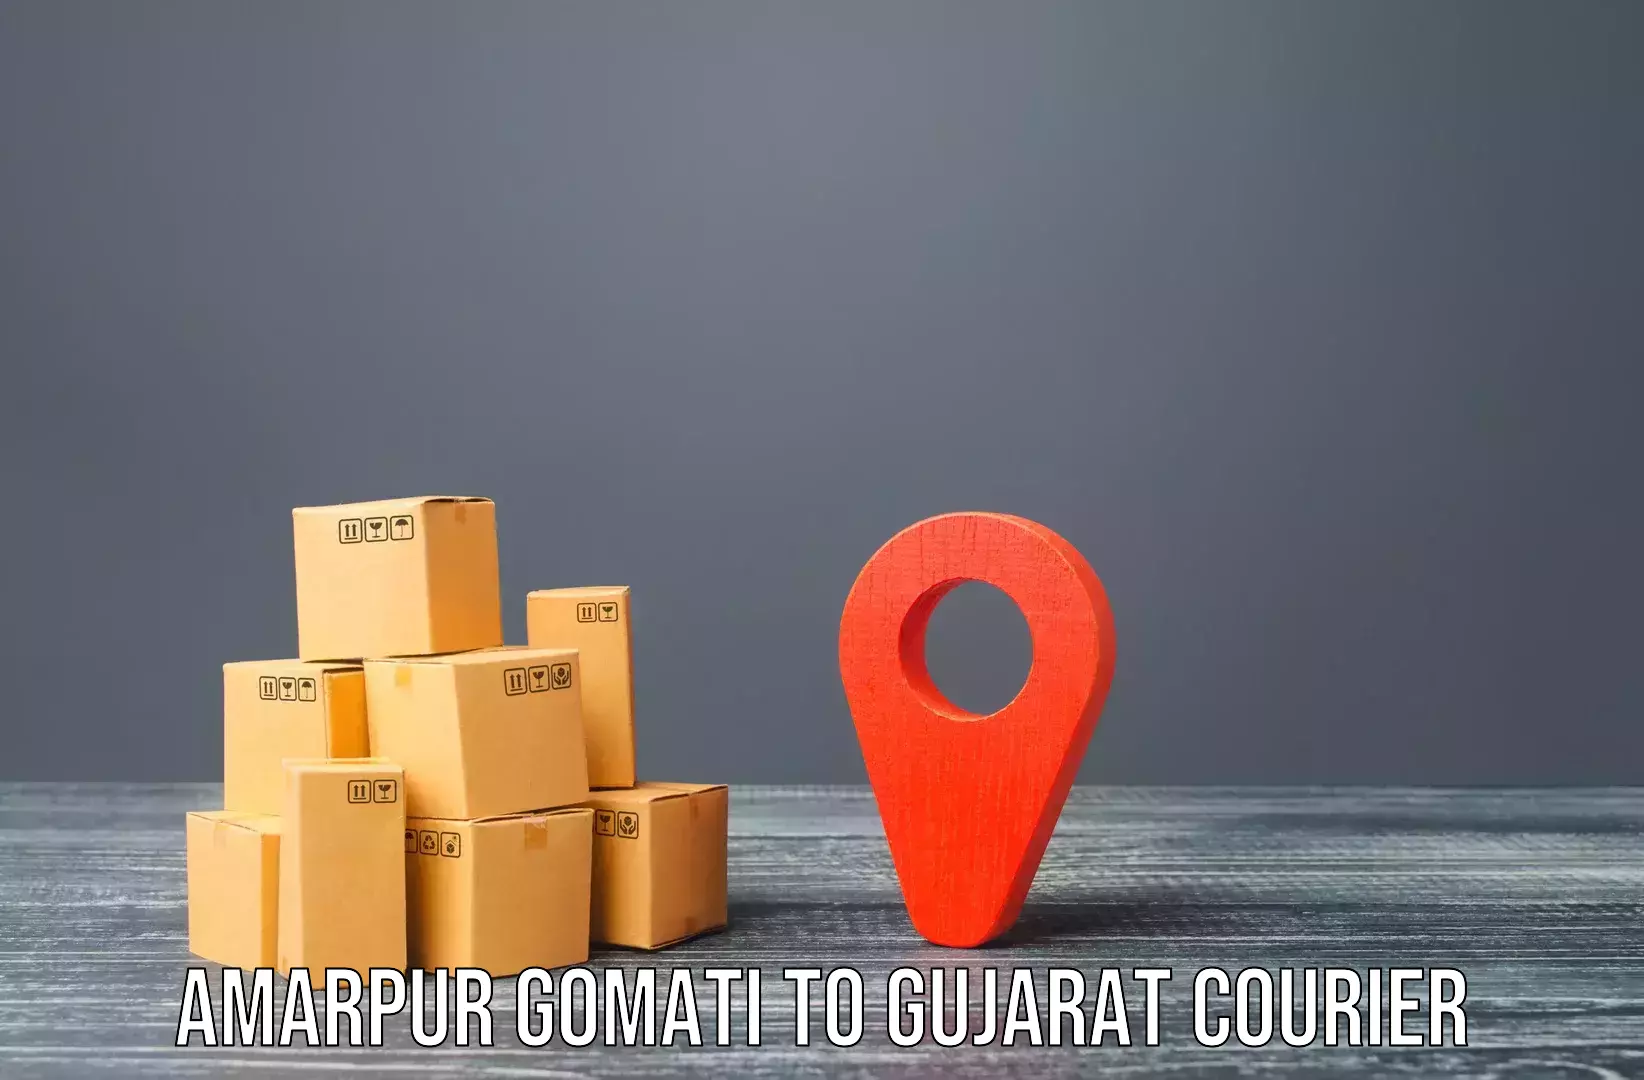 Furniture transport specialists Amarpur Gomati to Surat